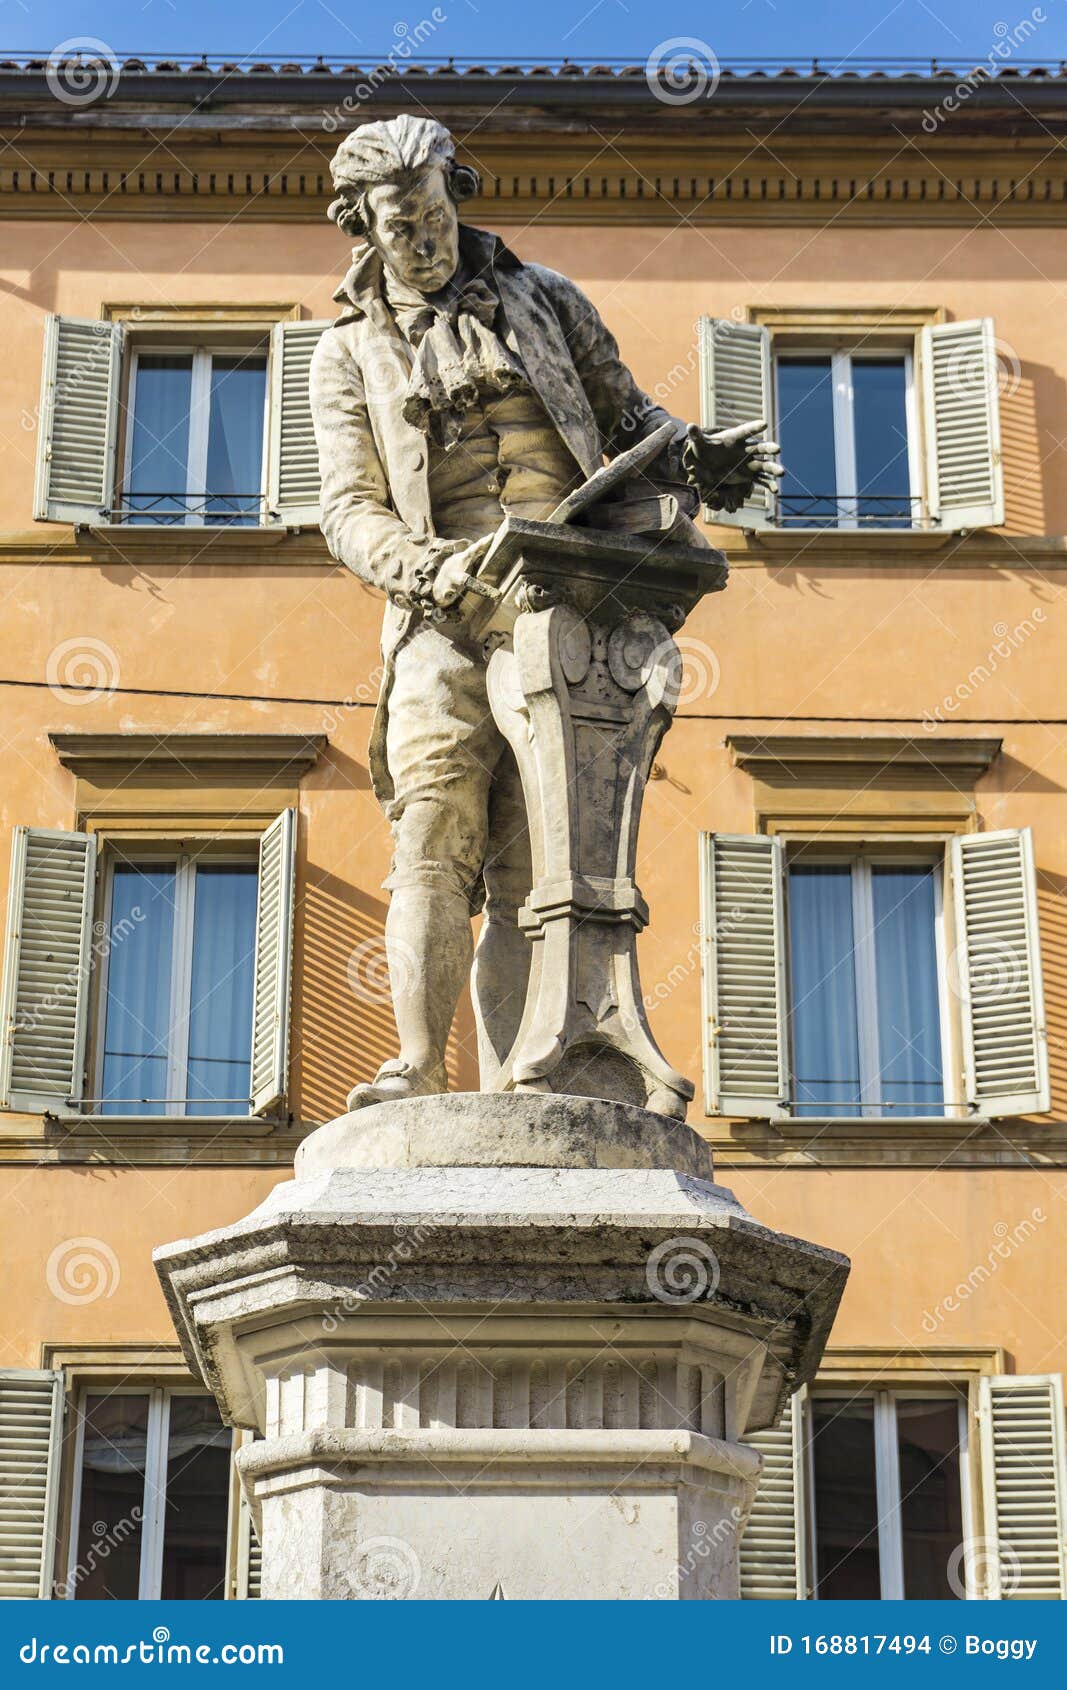 statue of luigi galvani in bologna, italy